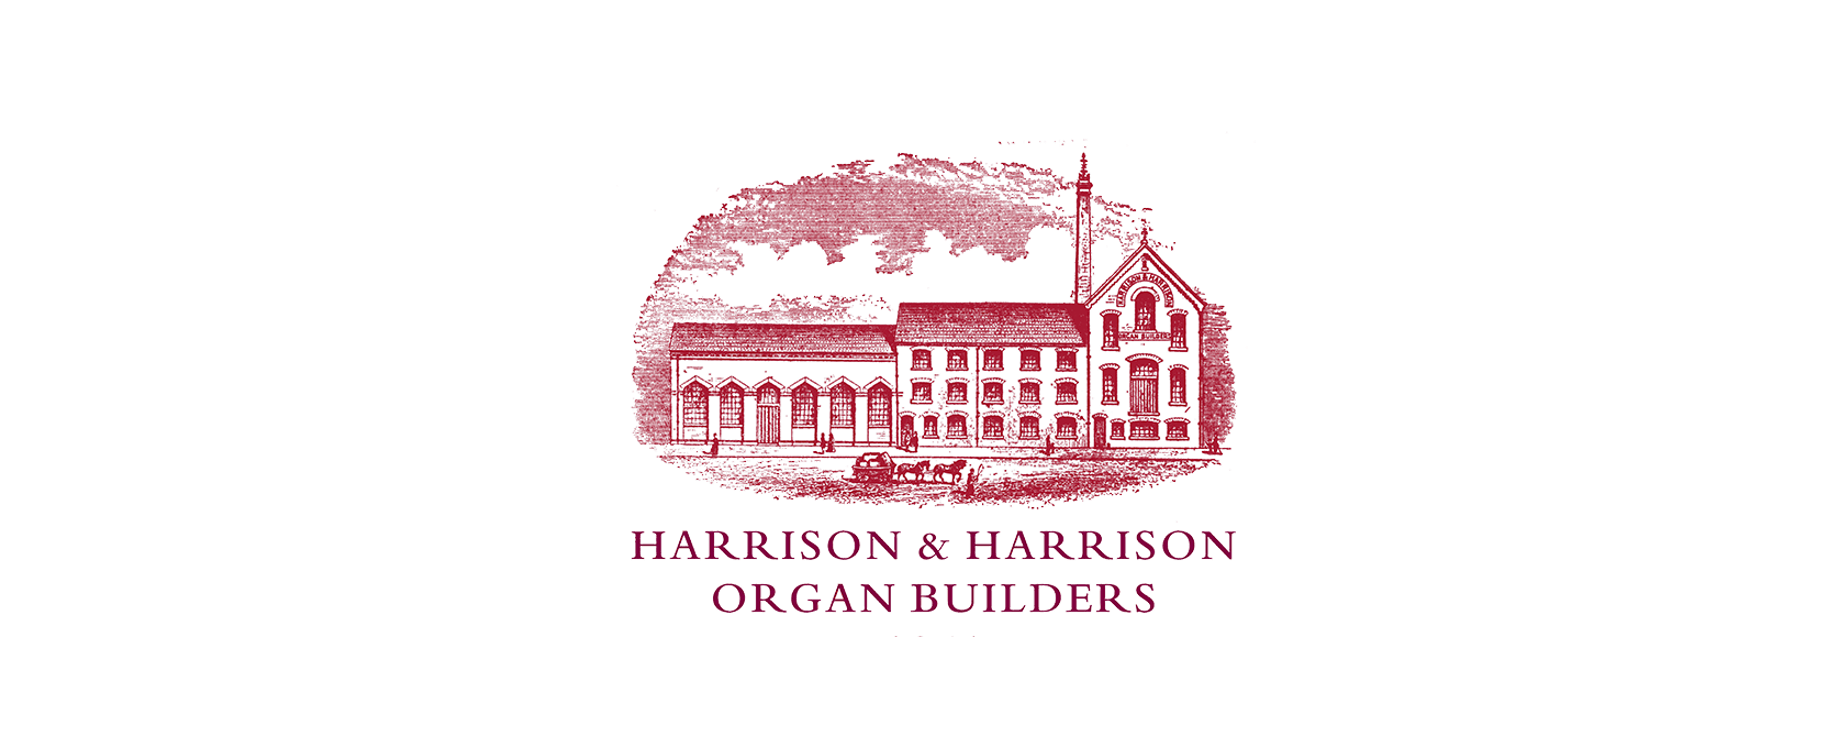 Harrison & Harrison Ltd